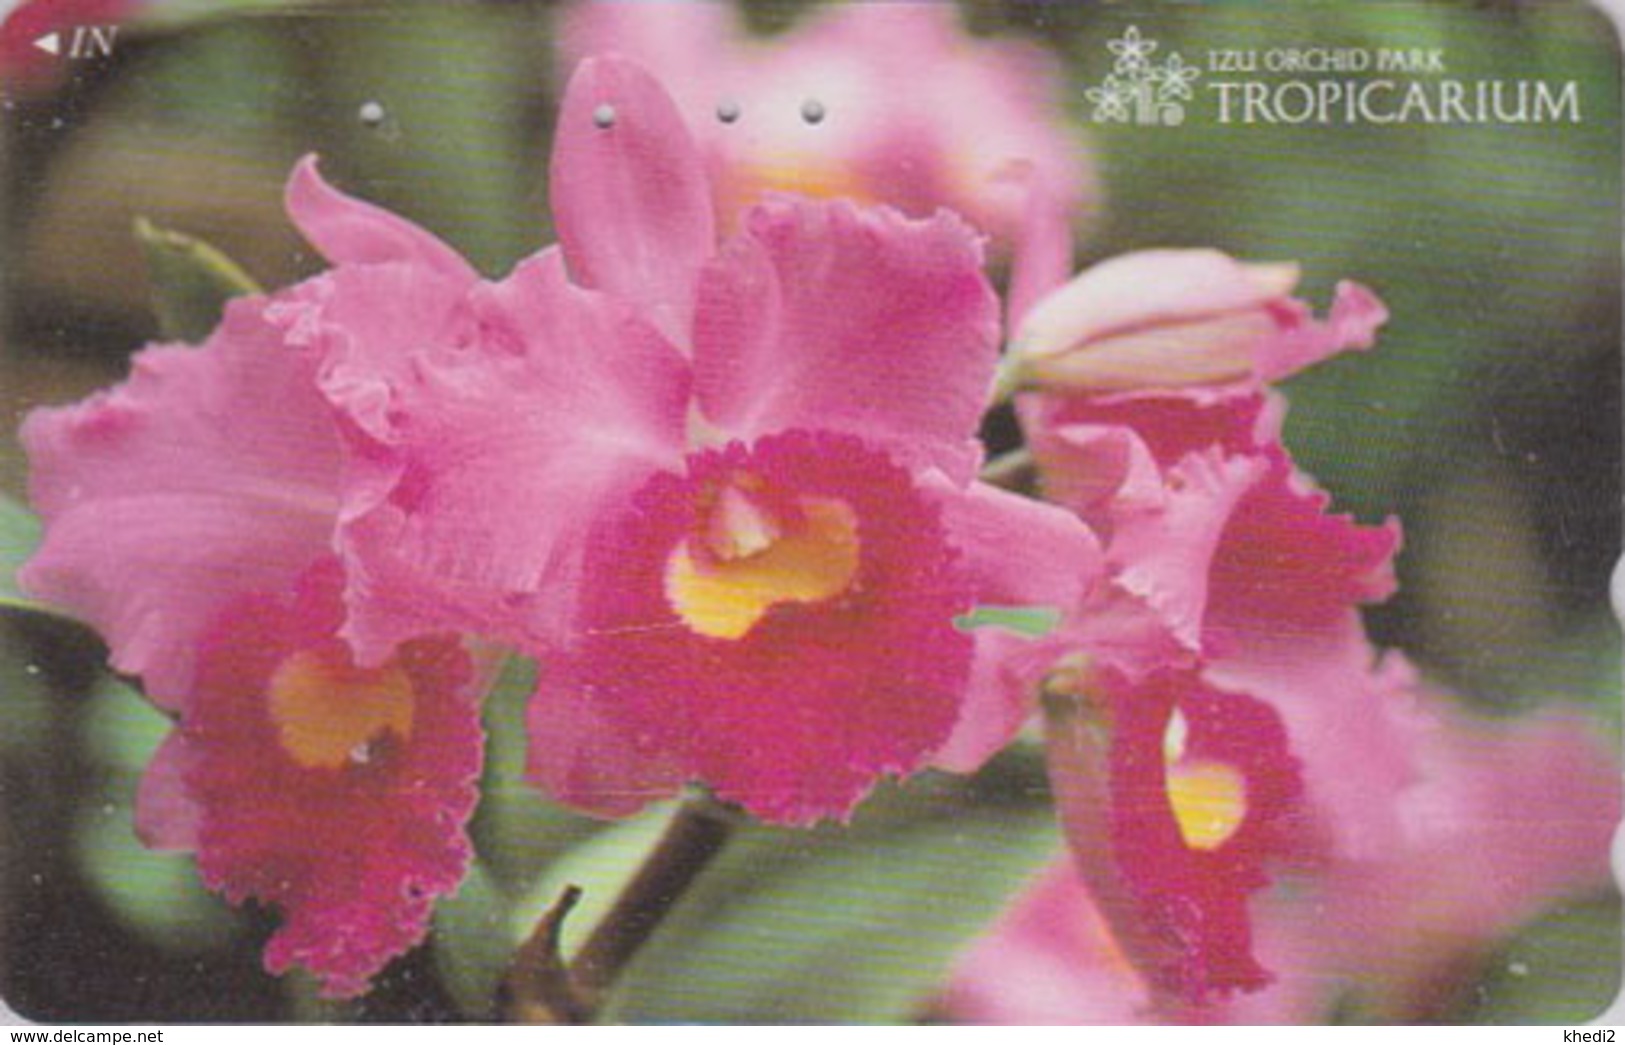 Télécarte Japon / 110-011 - FLEUR -  ORCHIDEE **  Série TROPICARIUM  IZU ORCHID PARK ** - FLOWER Japan Phonecard - 2436 - Bloemen